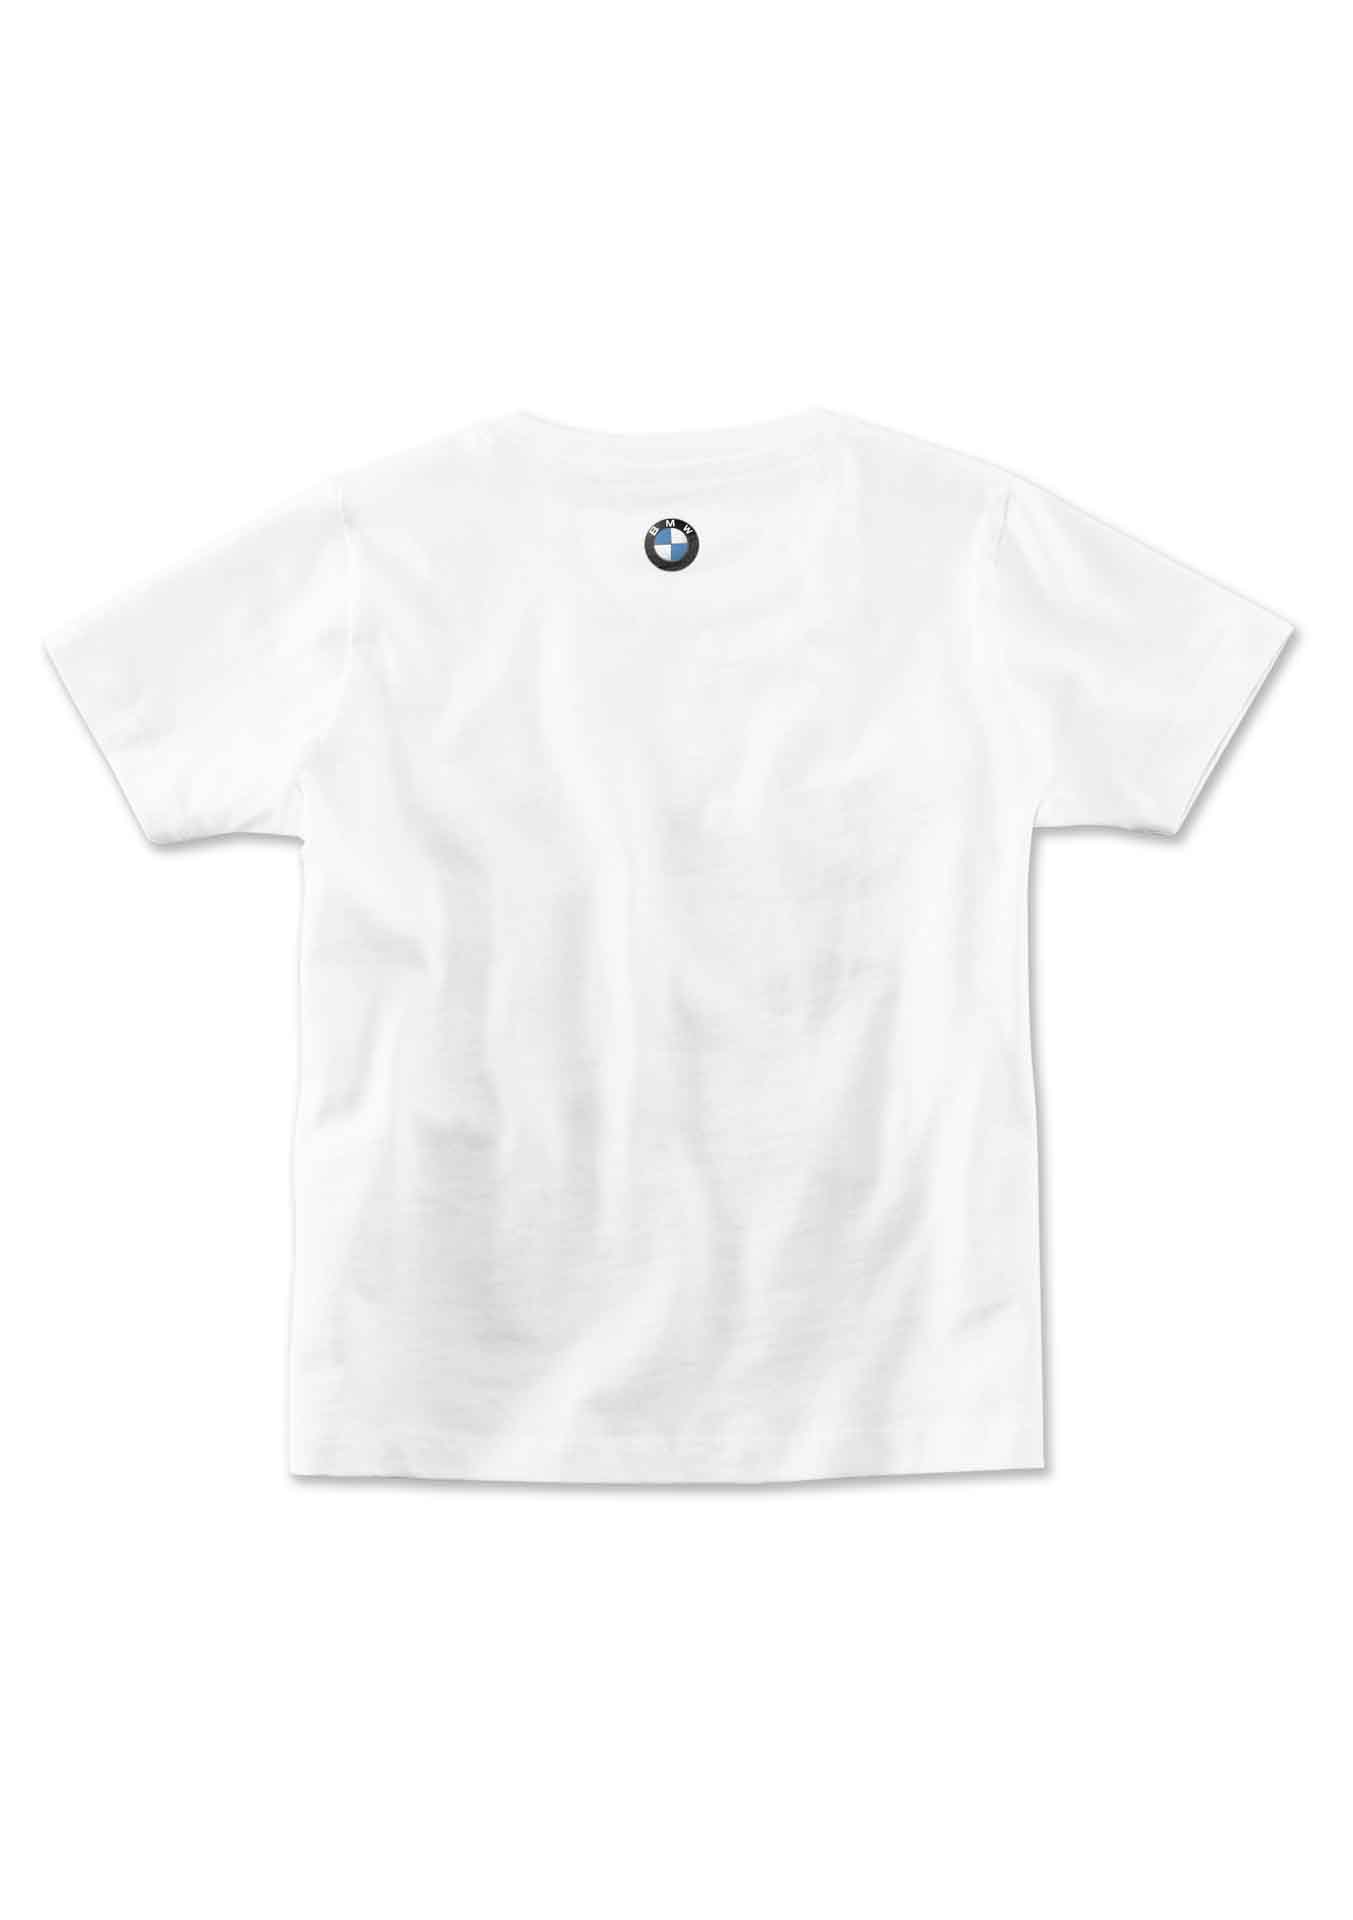 Koszulka BMW TIC TAC TOE, dziecięca rozm.: 104 -128 80142466177-179 #2